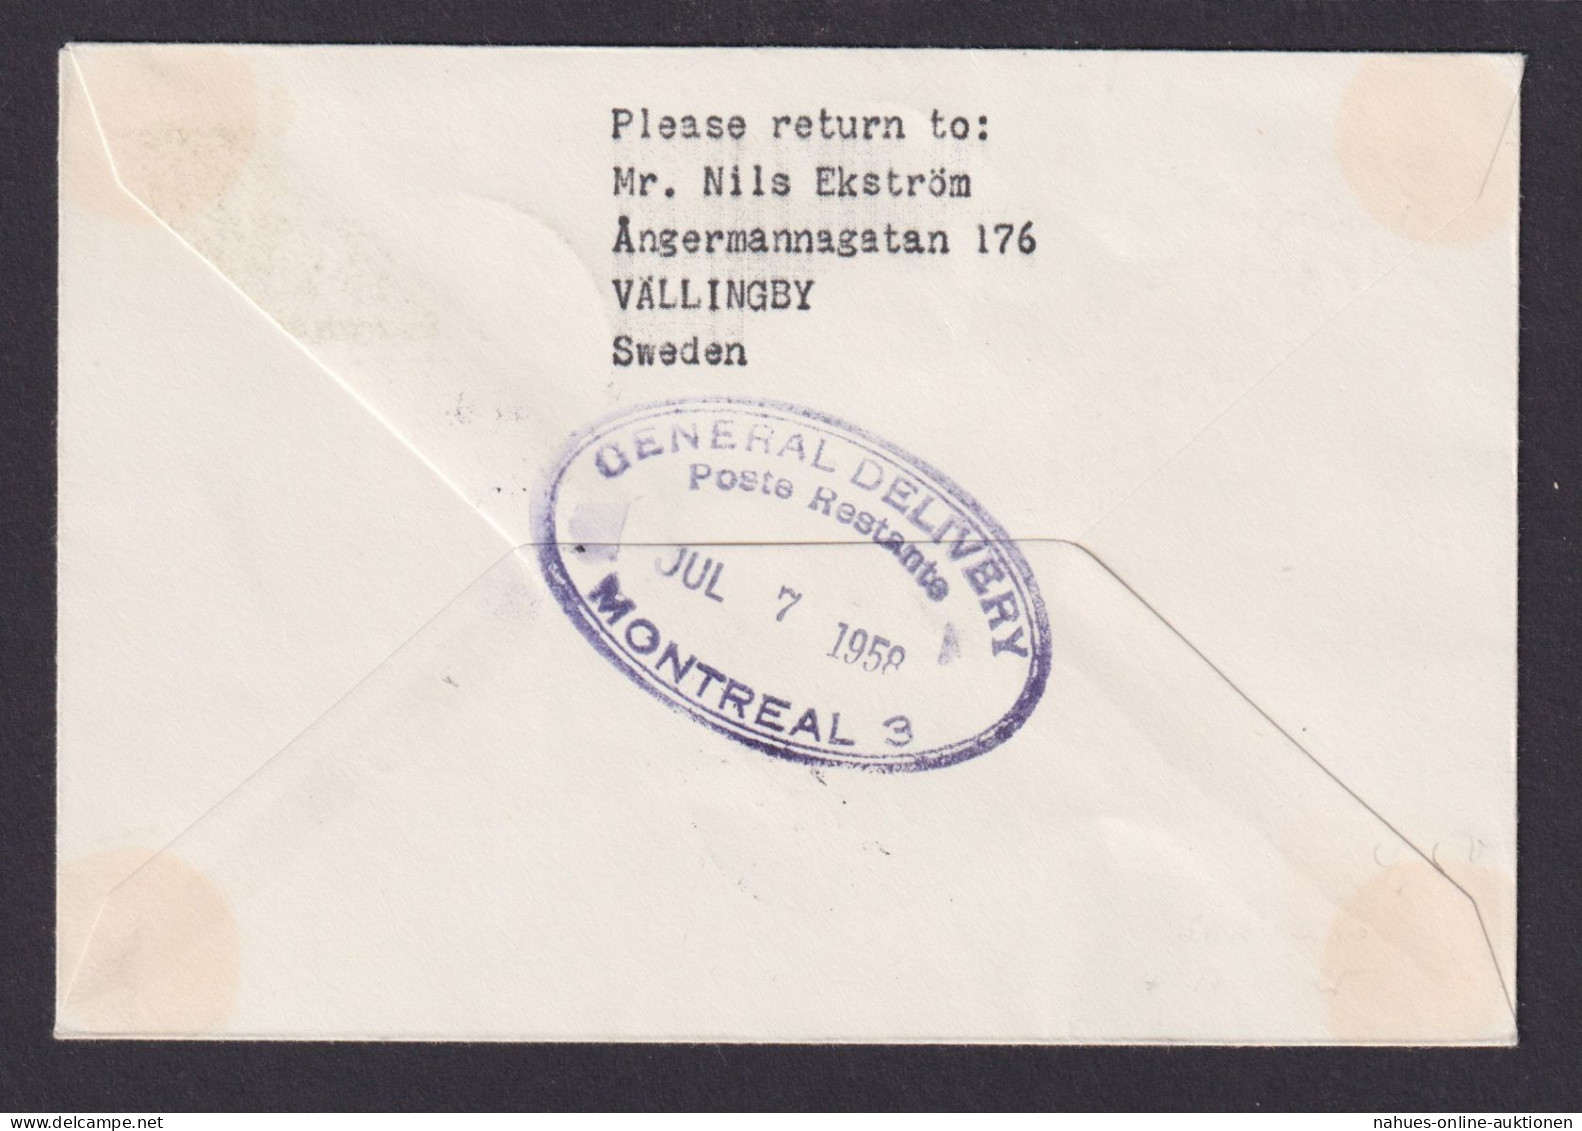 Flugpost Brief Air Mail Schweden SAS Erstflug Stockholm Montreal Kanada 4.7.1958 - Briefe U. Dokumente